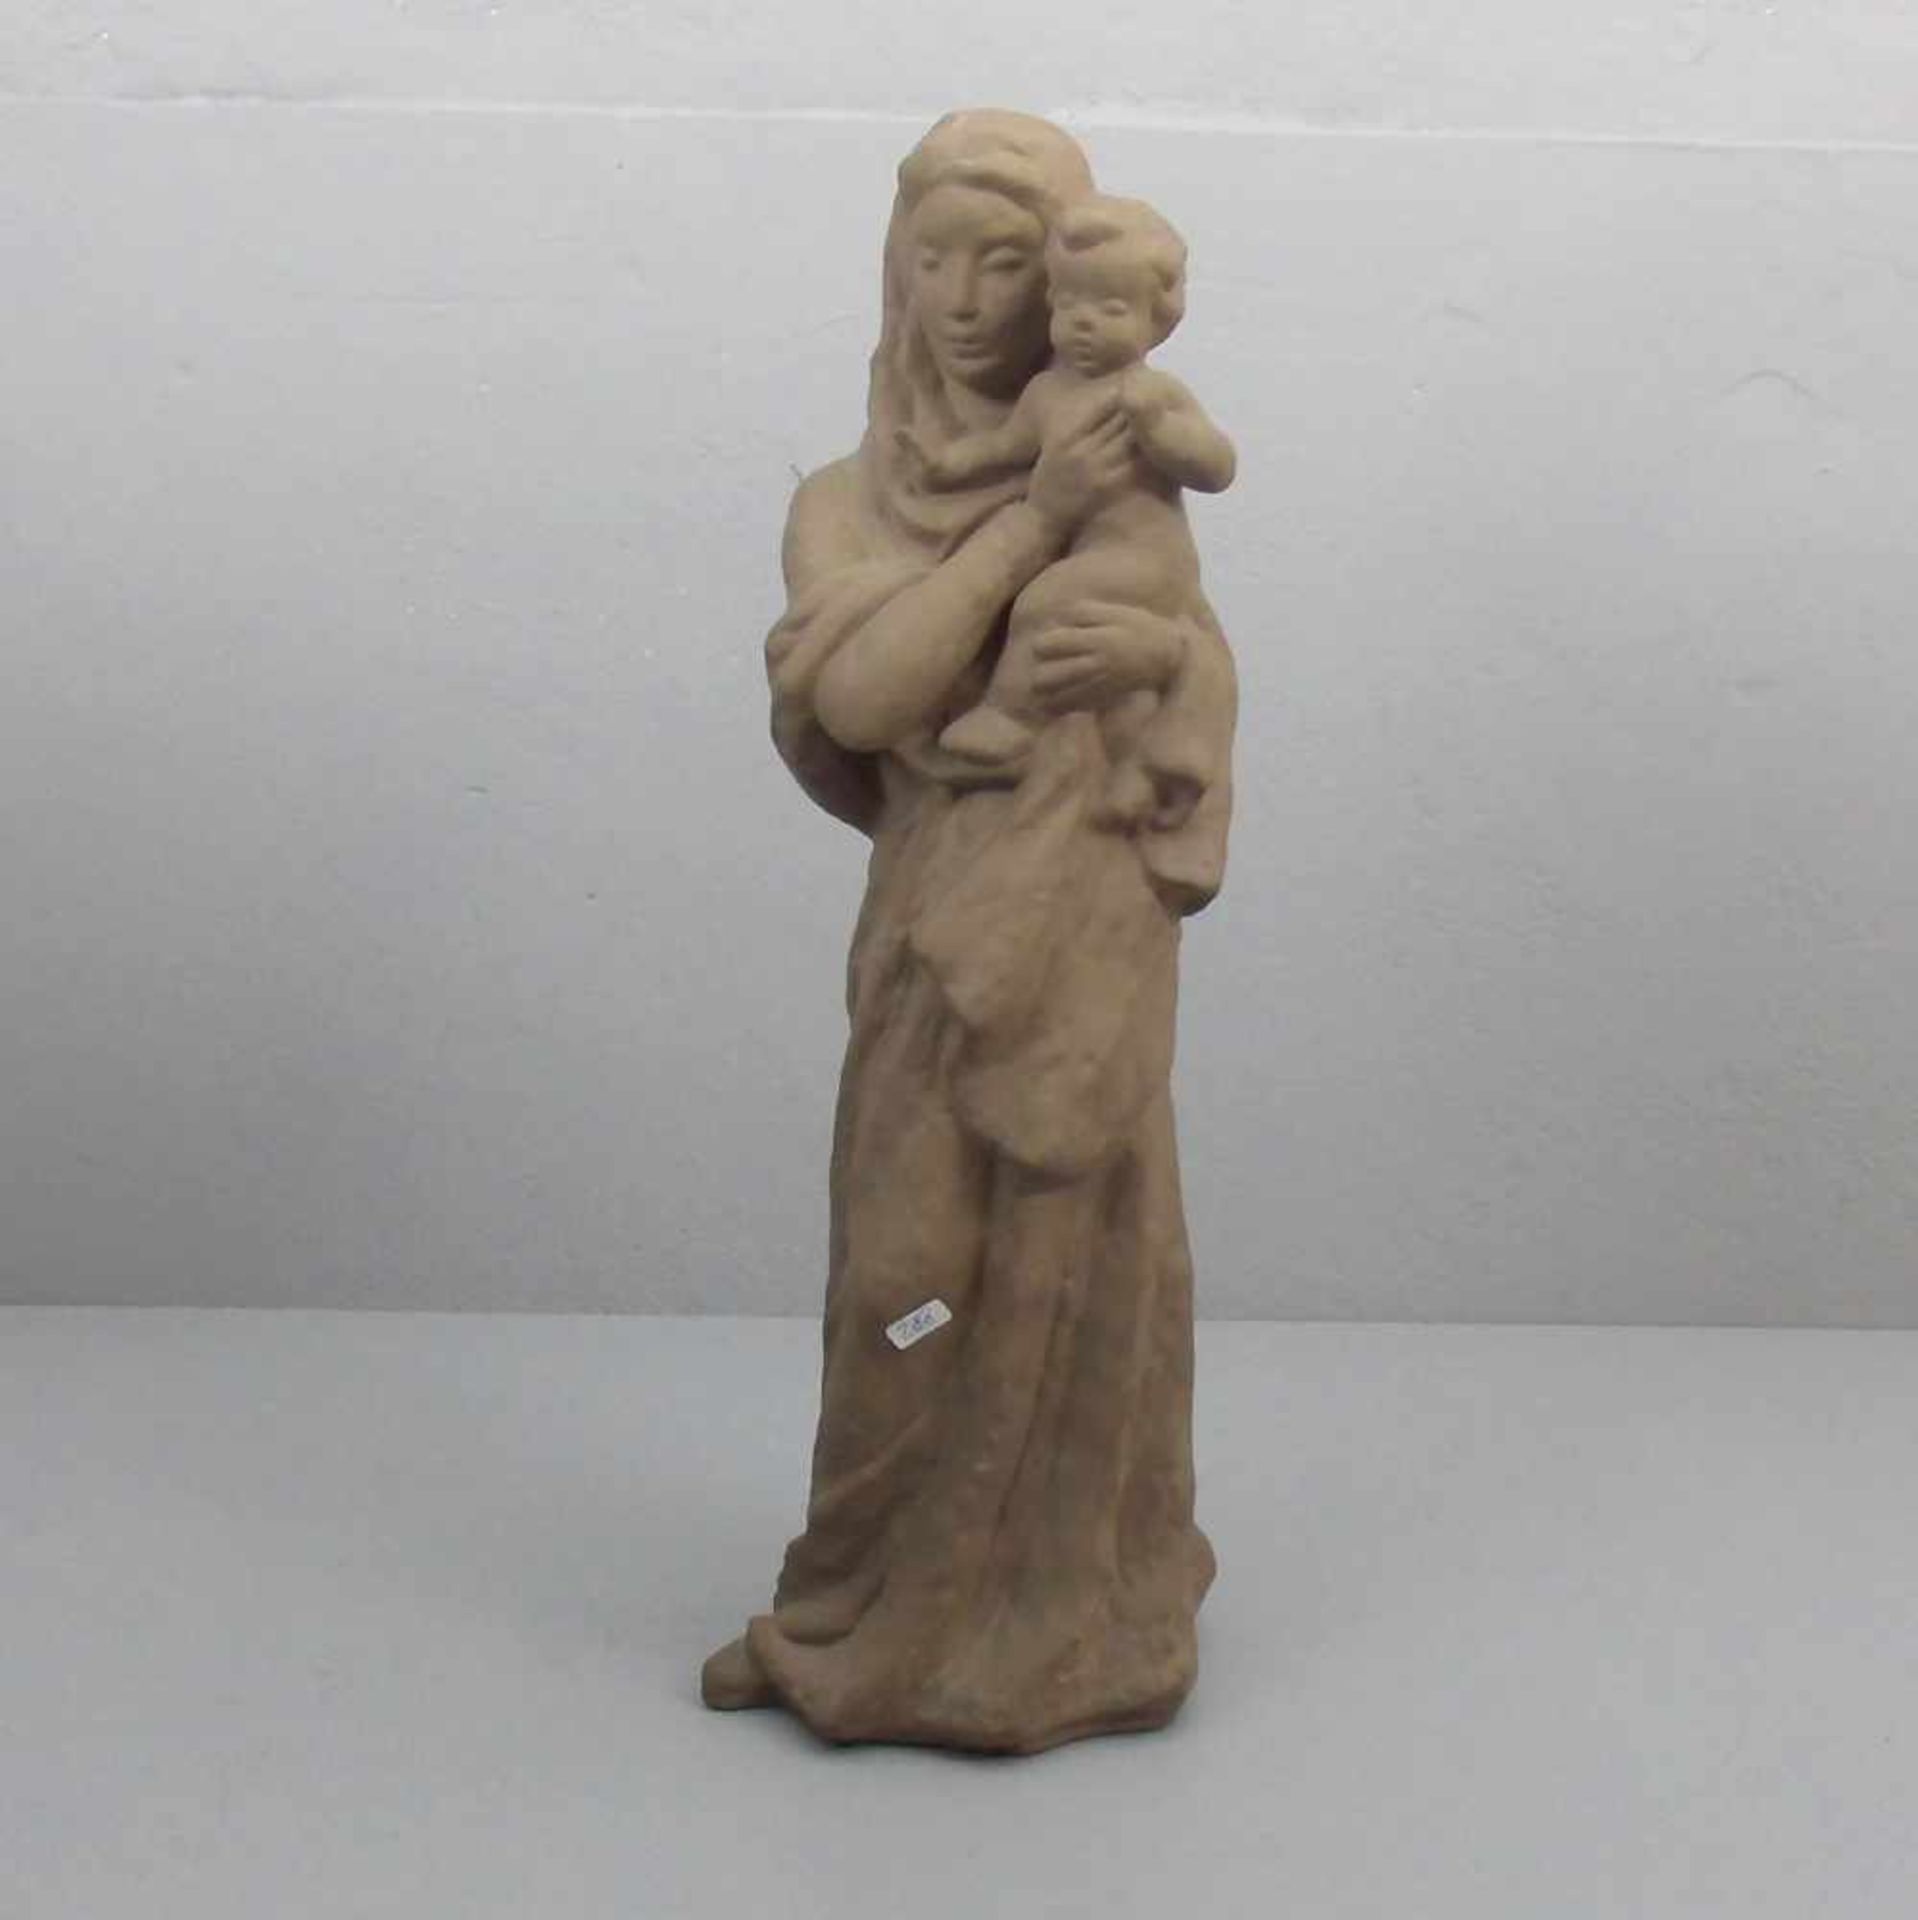 FRIEDRICH-GRONAU, LORE (1905-2002), Skulptur: "Madonna mit Kind / Mutter mit Kind", Hersteller